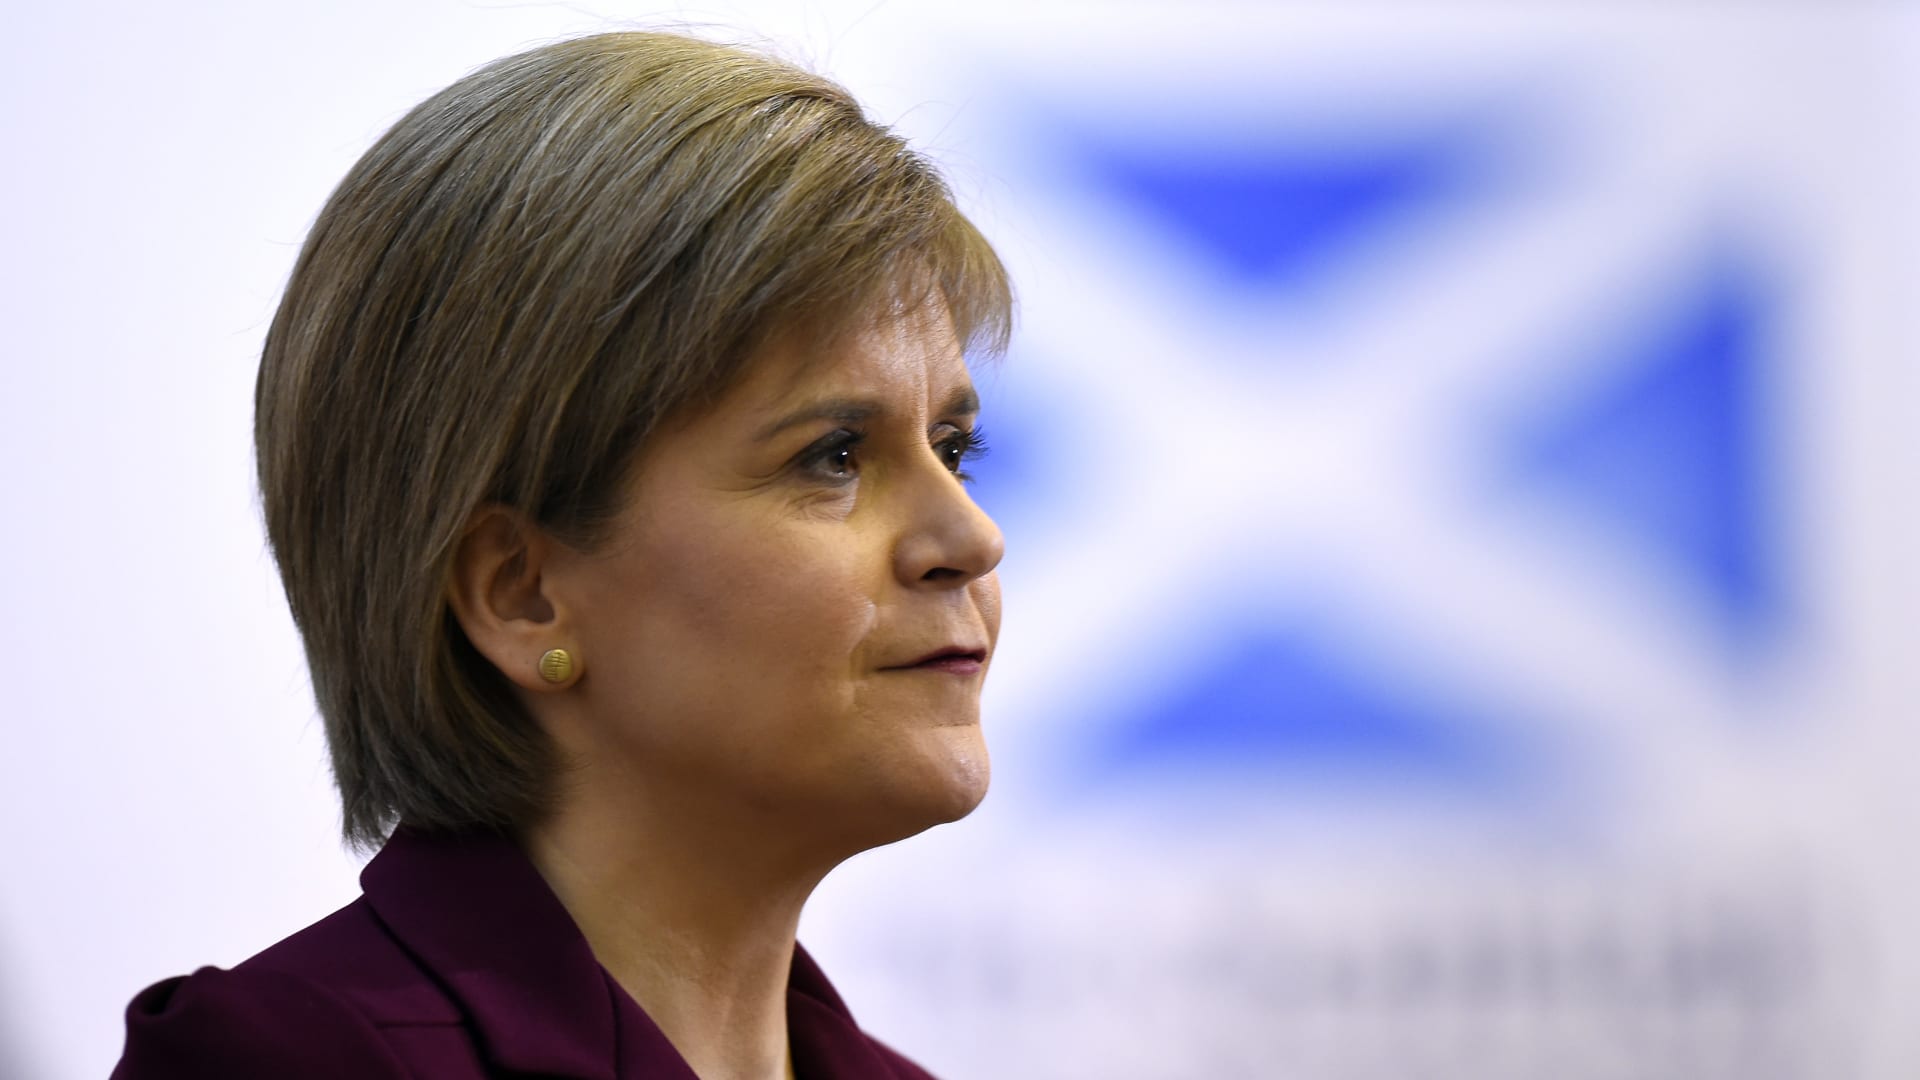 استقالة رئيسة وزراء اسكتلندا: علمت أن الوقت قد حان لفسح المجال للآخرين